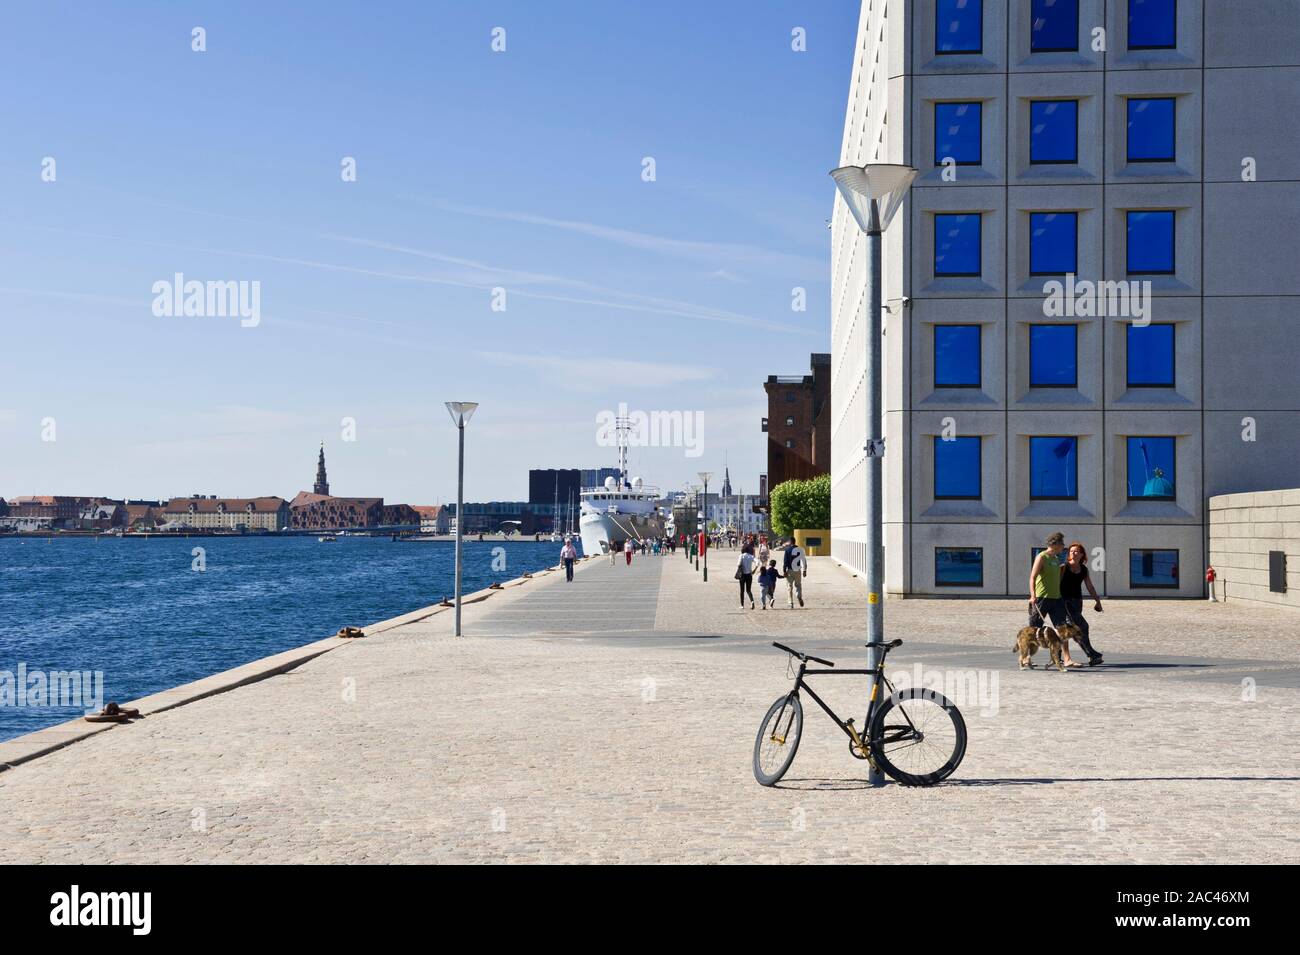 Ein Schiff vor Anker im Hafen von Kopenhagen, Dänemark Stockfoto